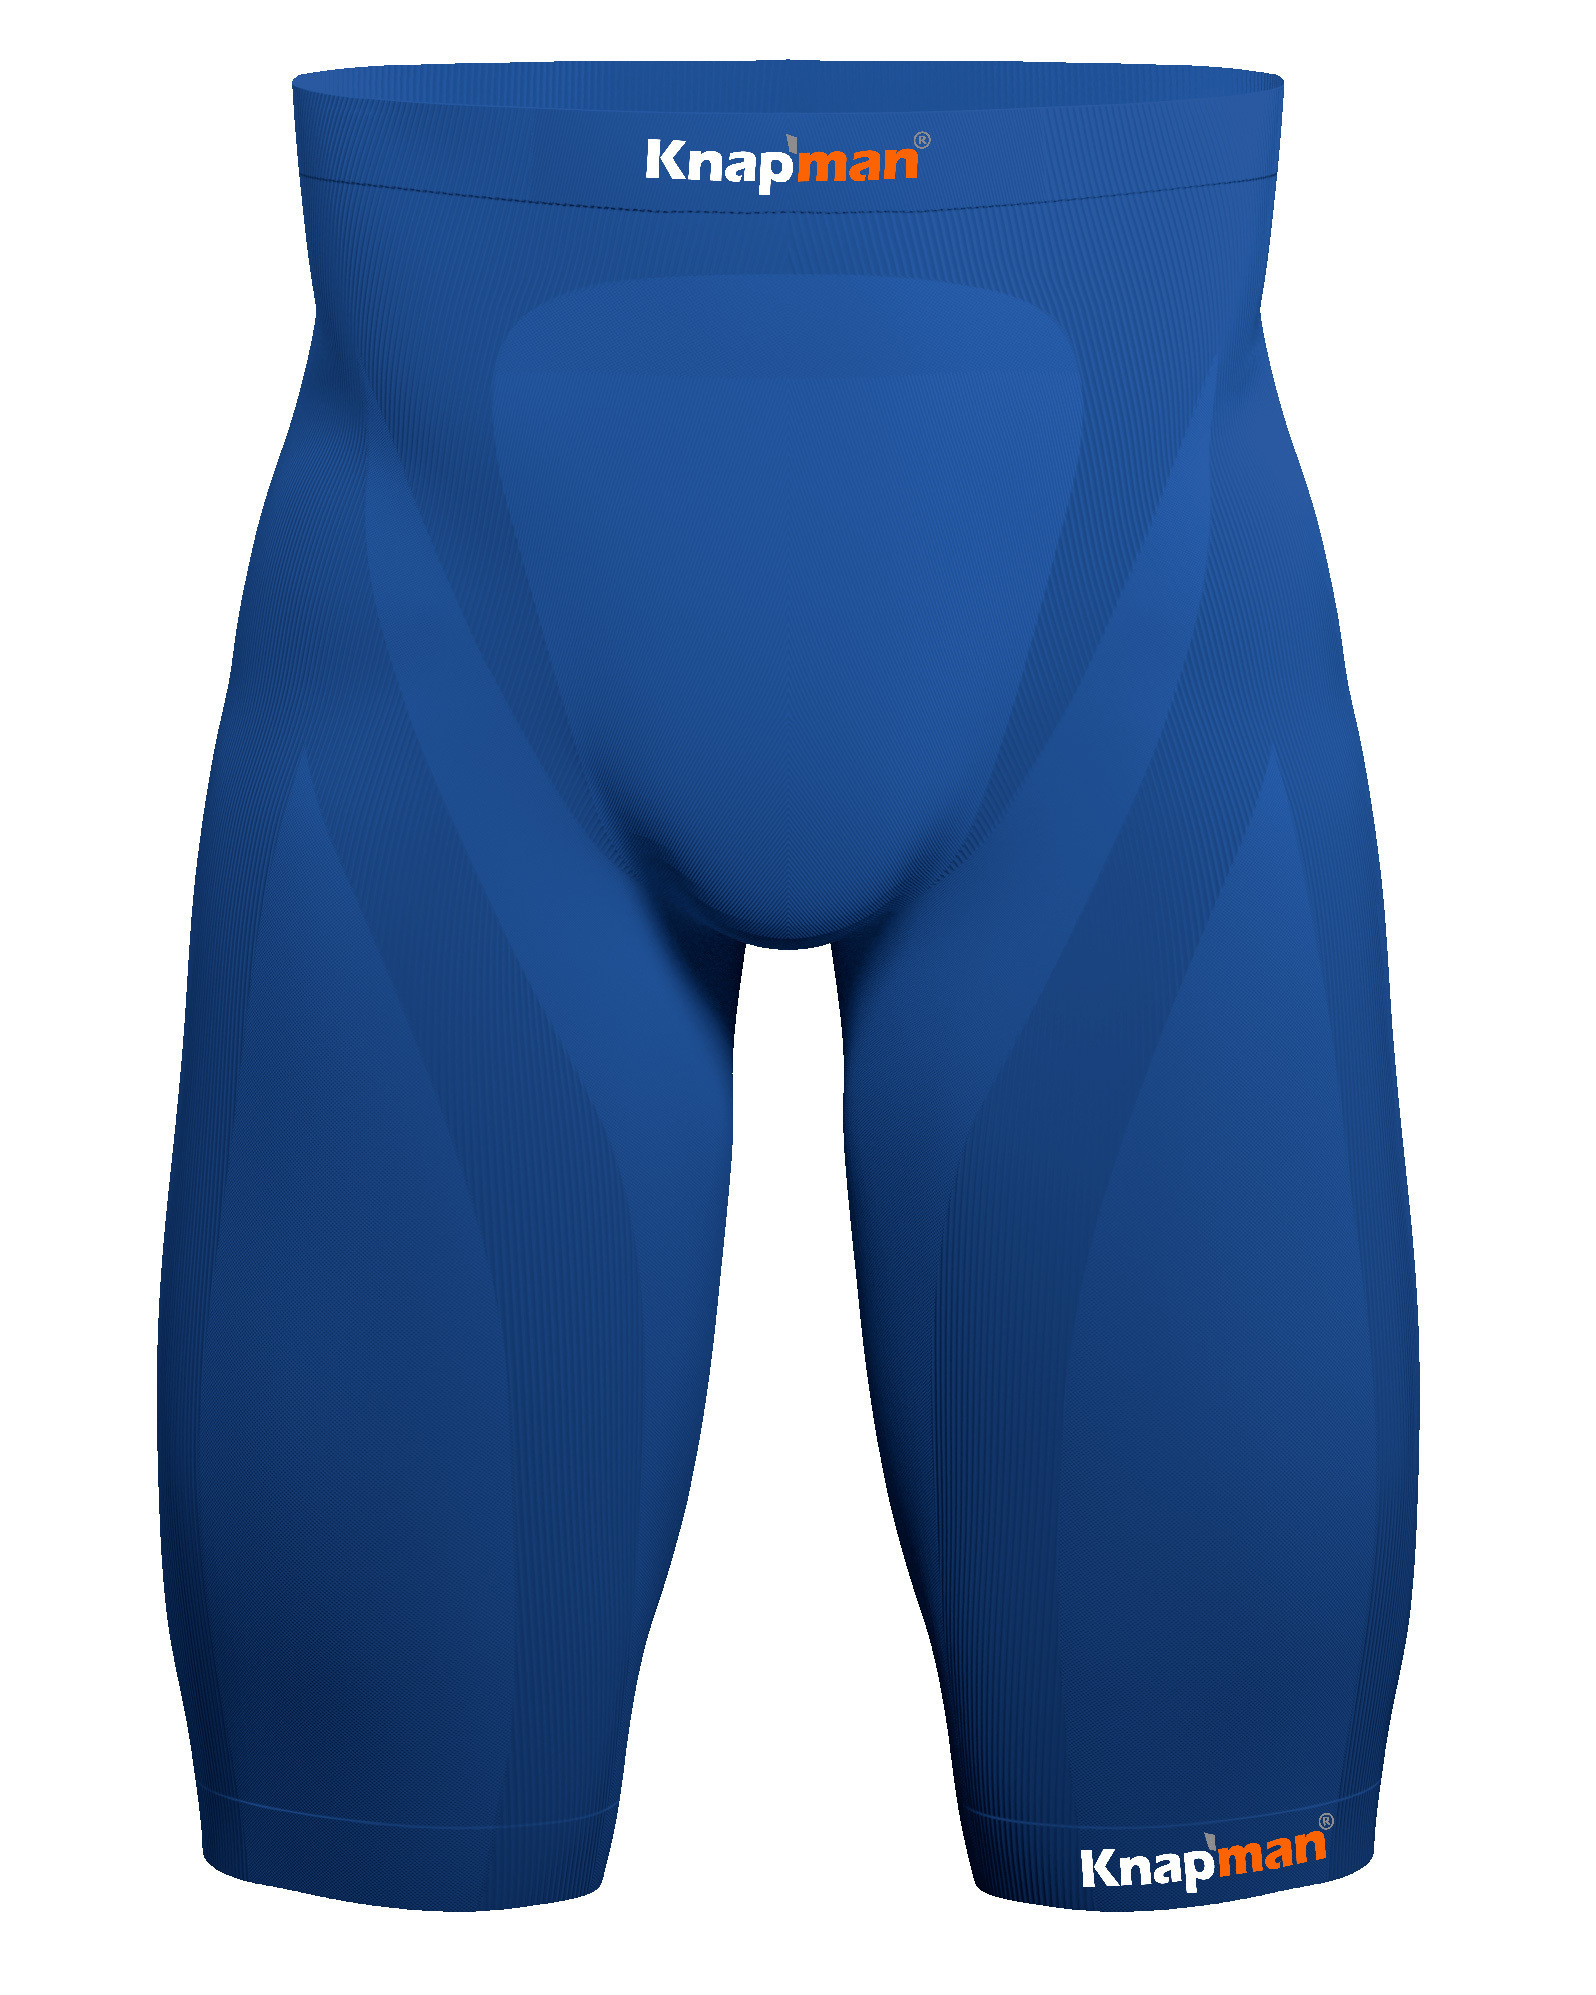 Knap'man Compression Shorts Royal Blue - 25%